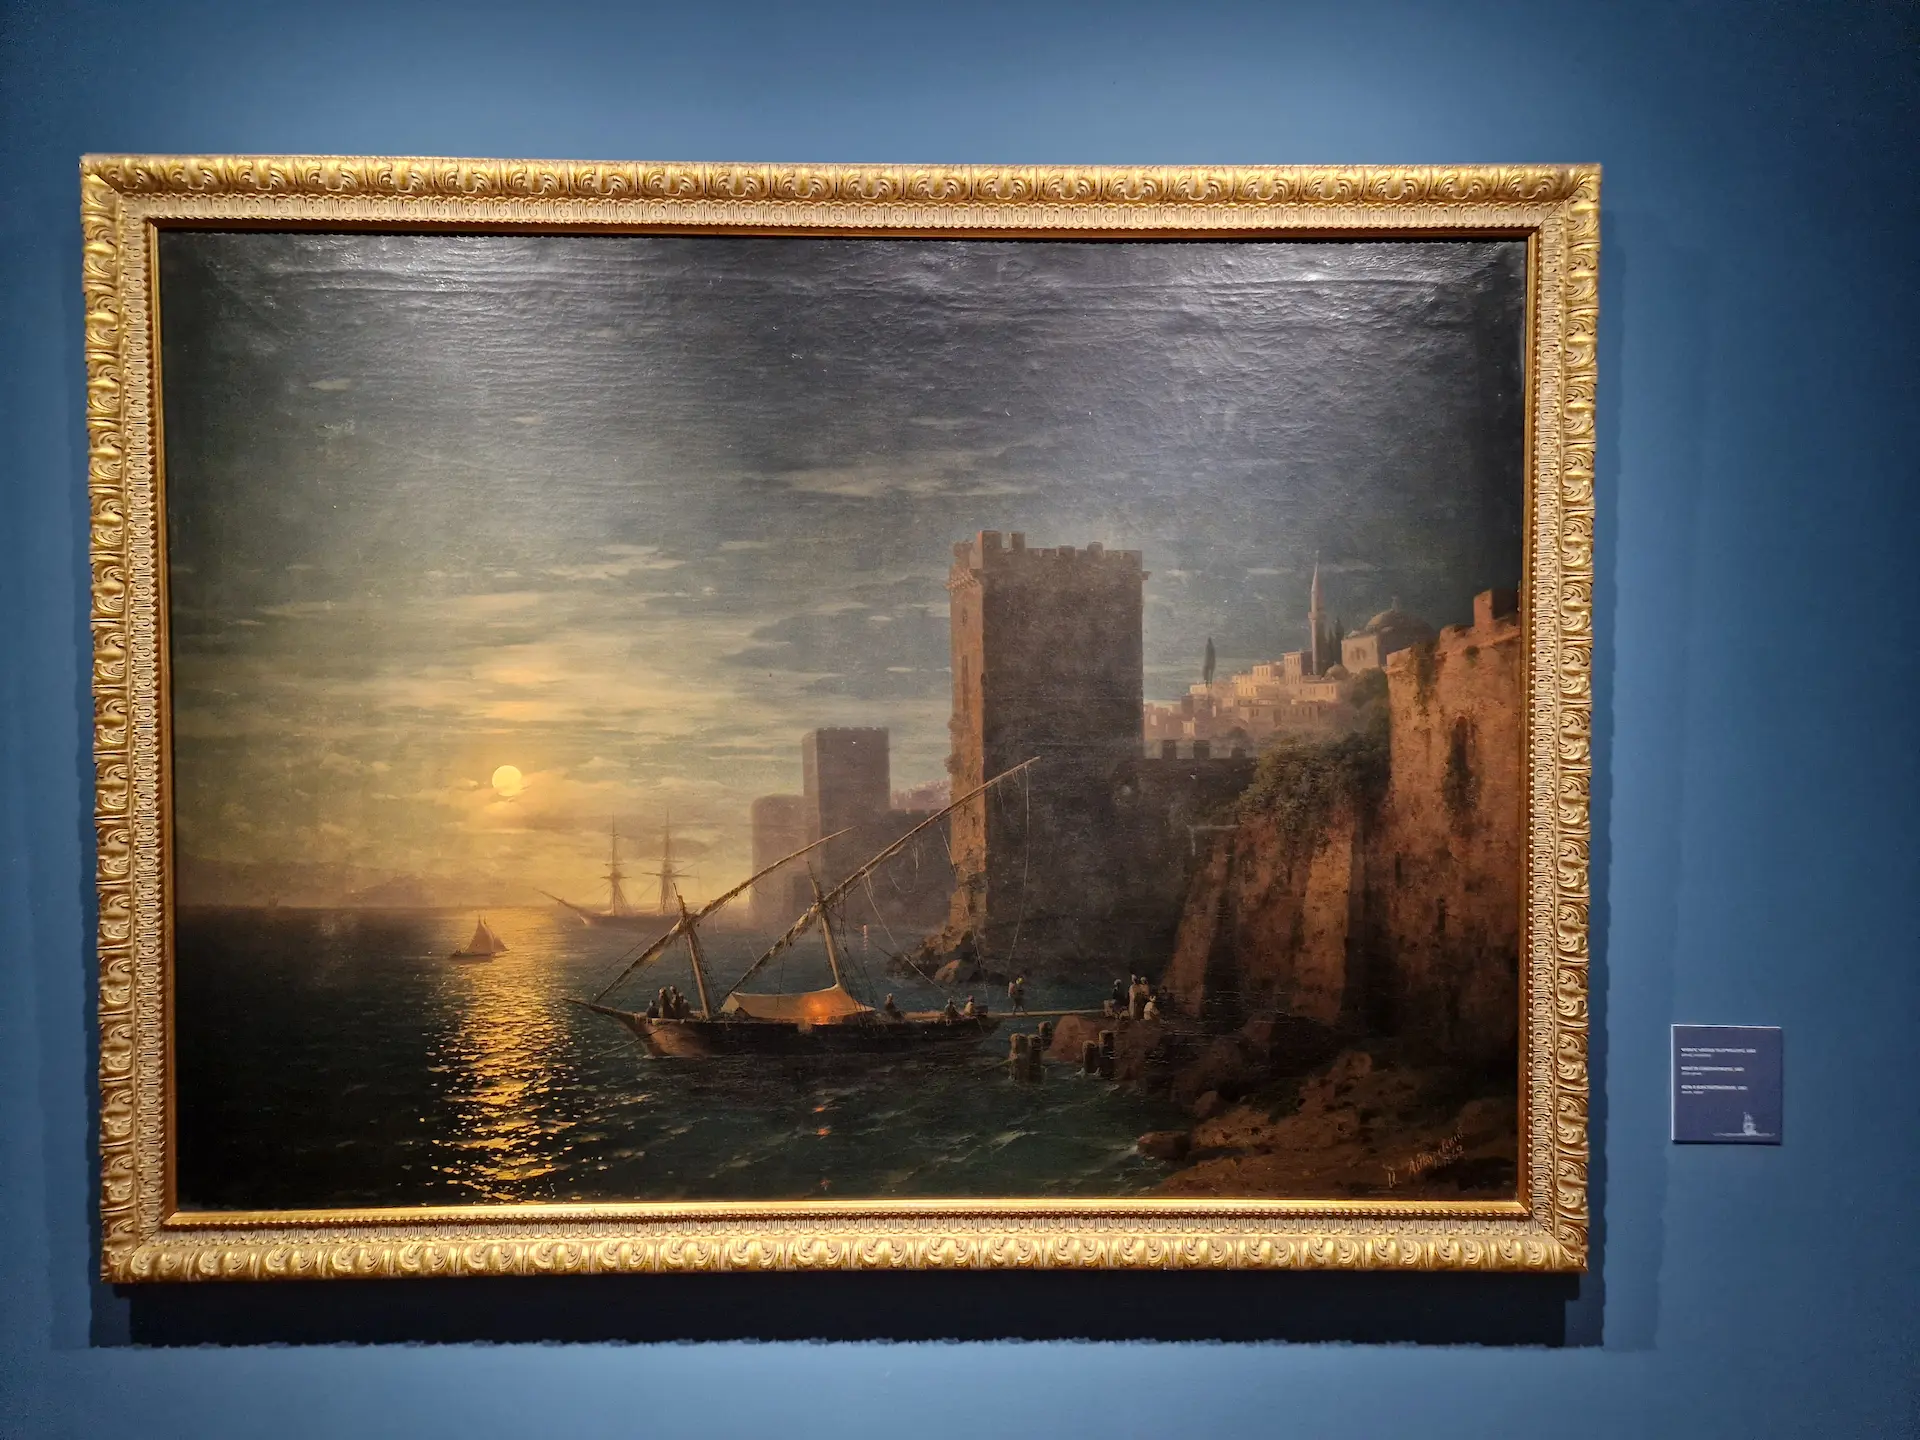 Peinture réaliste d'un coucher de soleil sur la côte, le soleil couchant se reflète dans la mer calme, les ramparts d'une ville s'élèvent sur la terre ferme, il y a un bateau de pêche au premier plan.